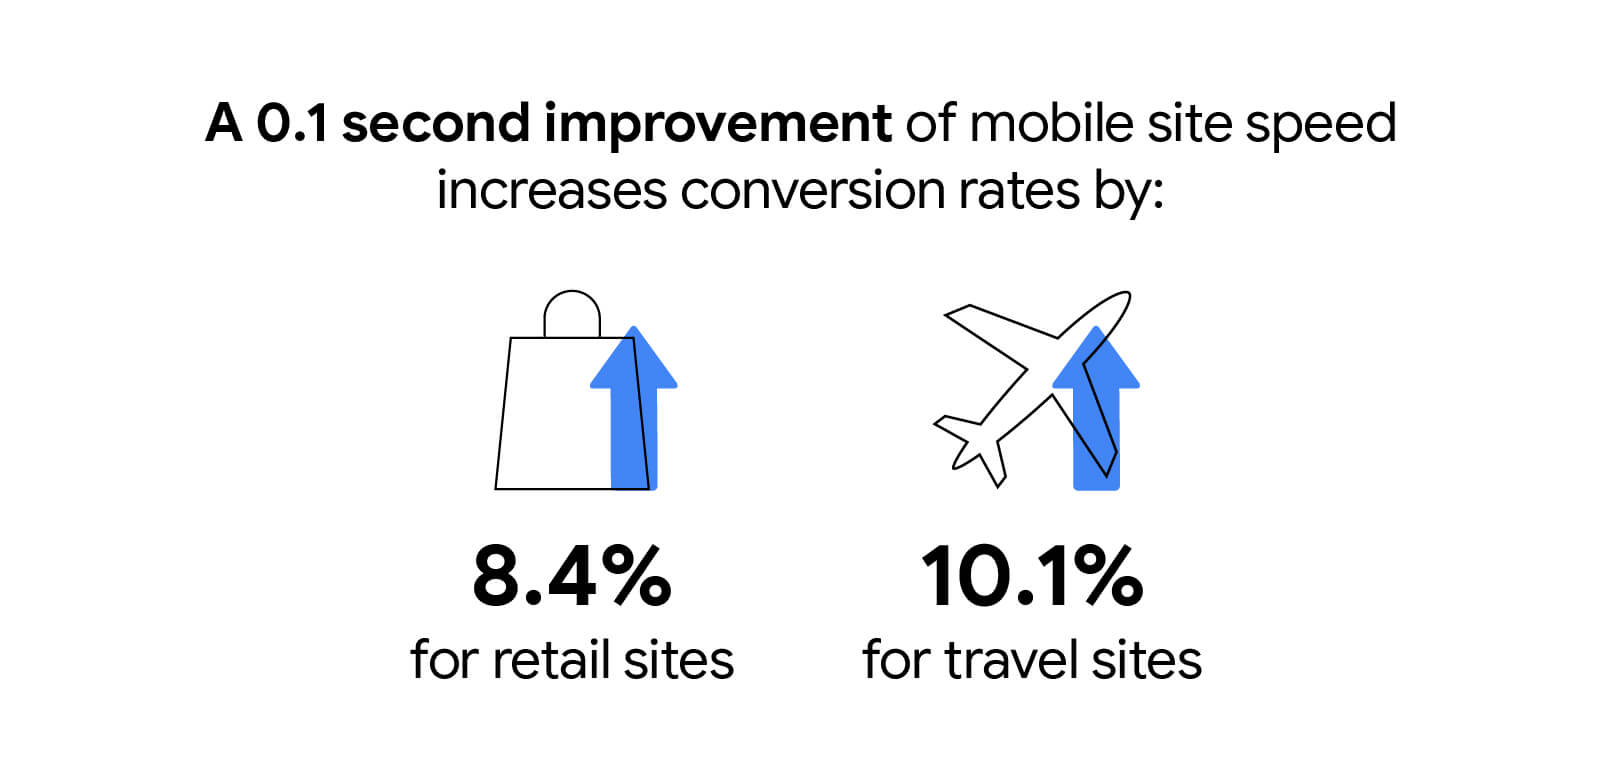 ويؤدي تحسين سرعة الموقع الإلكتروني للأجهزة الجوّالة بمقدار 0.1 ثانية إلى زيادة معدلات الإحالات الناجحة بنسبة 8.4% لمواقع البيع بالتجزئة و10.1% لمواقع السفر الإلكترونية.